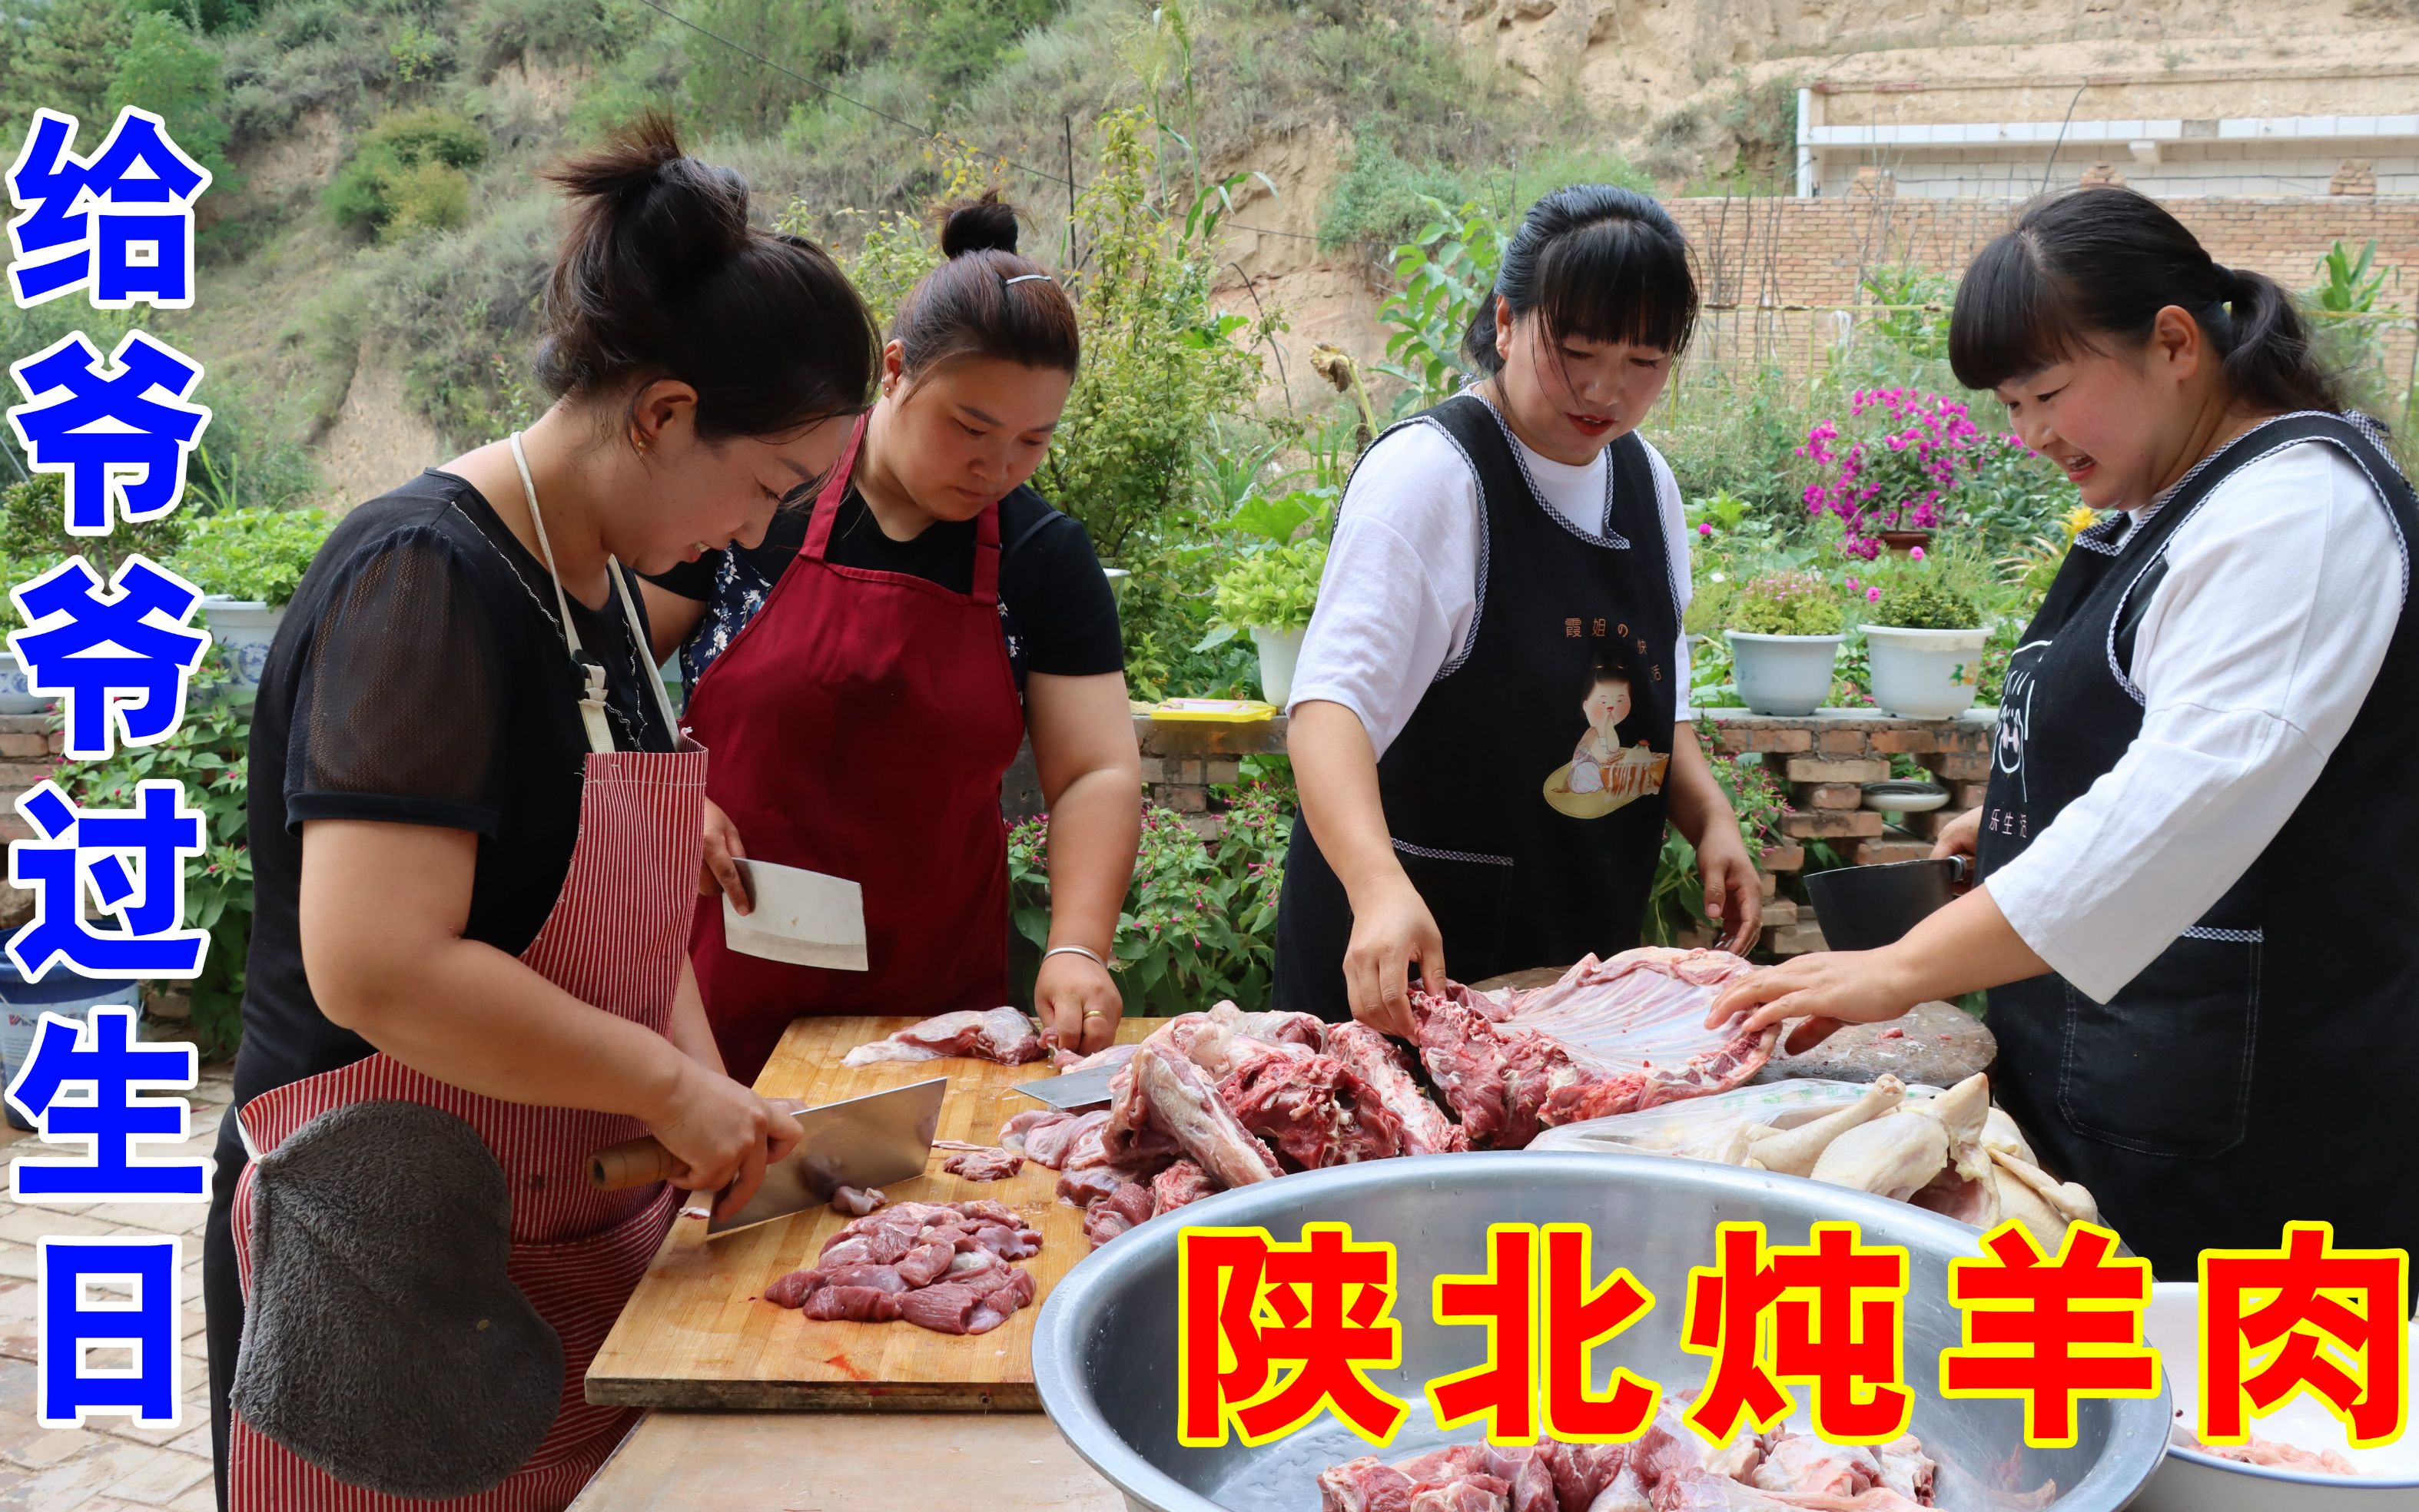 爷爷过生日霞姐做了一锅陕北炖羊肉吃全家人欢聚一堂真热闹